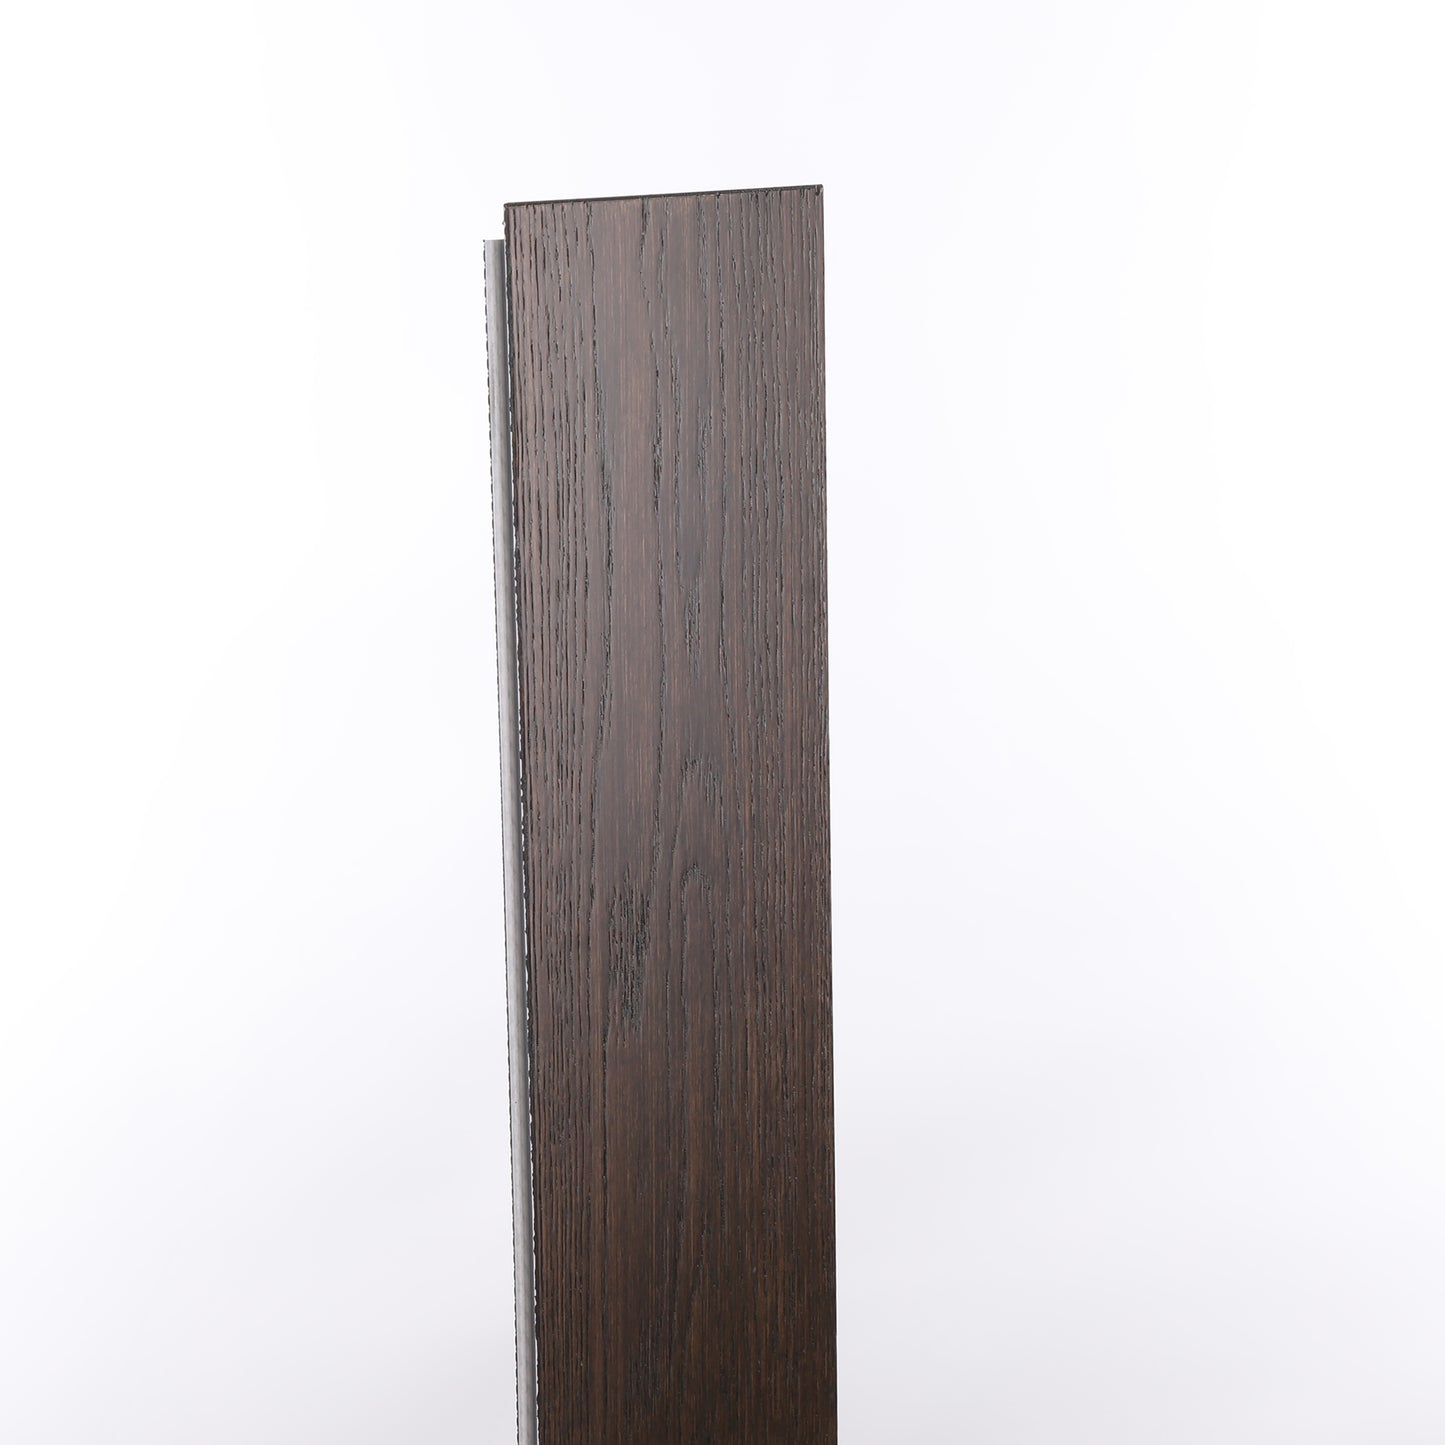 7mm Pioneer Waterproof Engineered Hardwood Flooring 5 in. Wide x Varying Length Long